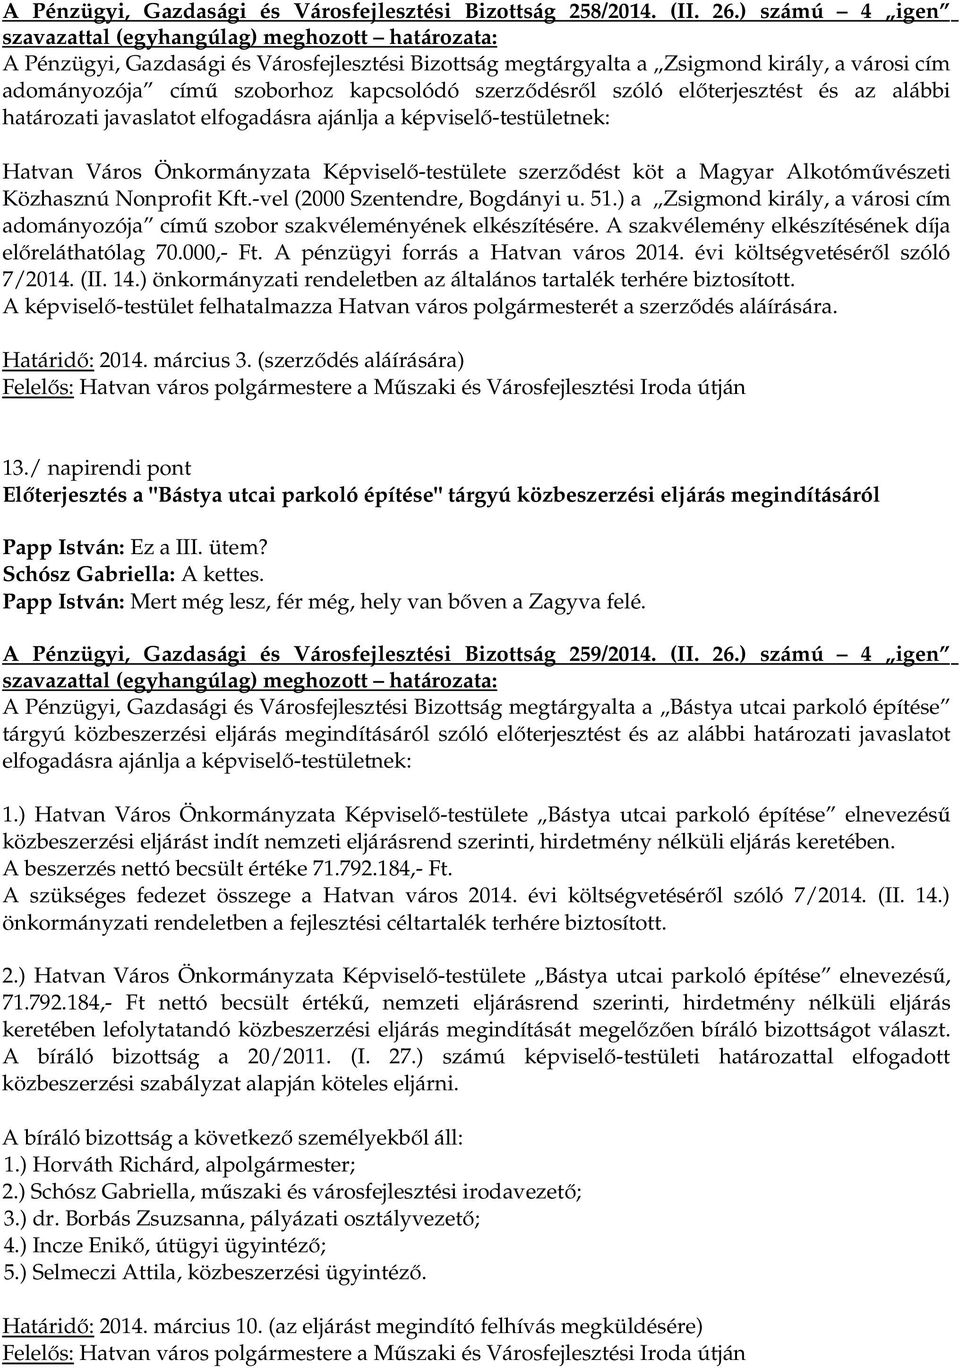 határozati javaslatot elfogadásra ajánlja a Hatvan Város Önkormányzata Képviselő-testülete szerződést köt a Magyar Alkotóművészeti Közhasznú Nonprofit Kft.-vel (2000 Szentendre, Bogdányi u. 51.